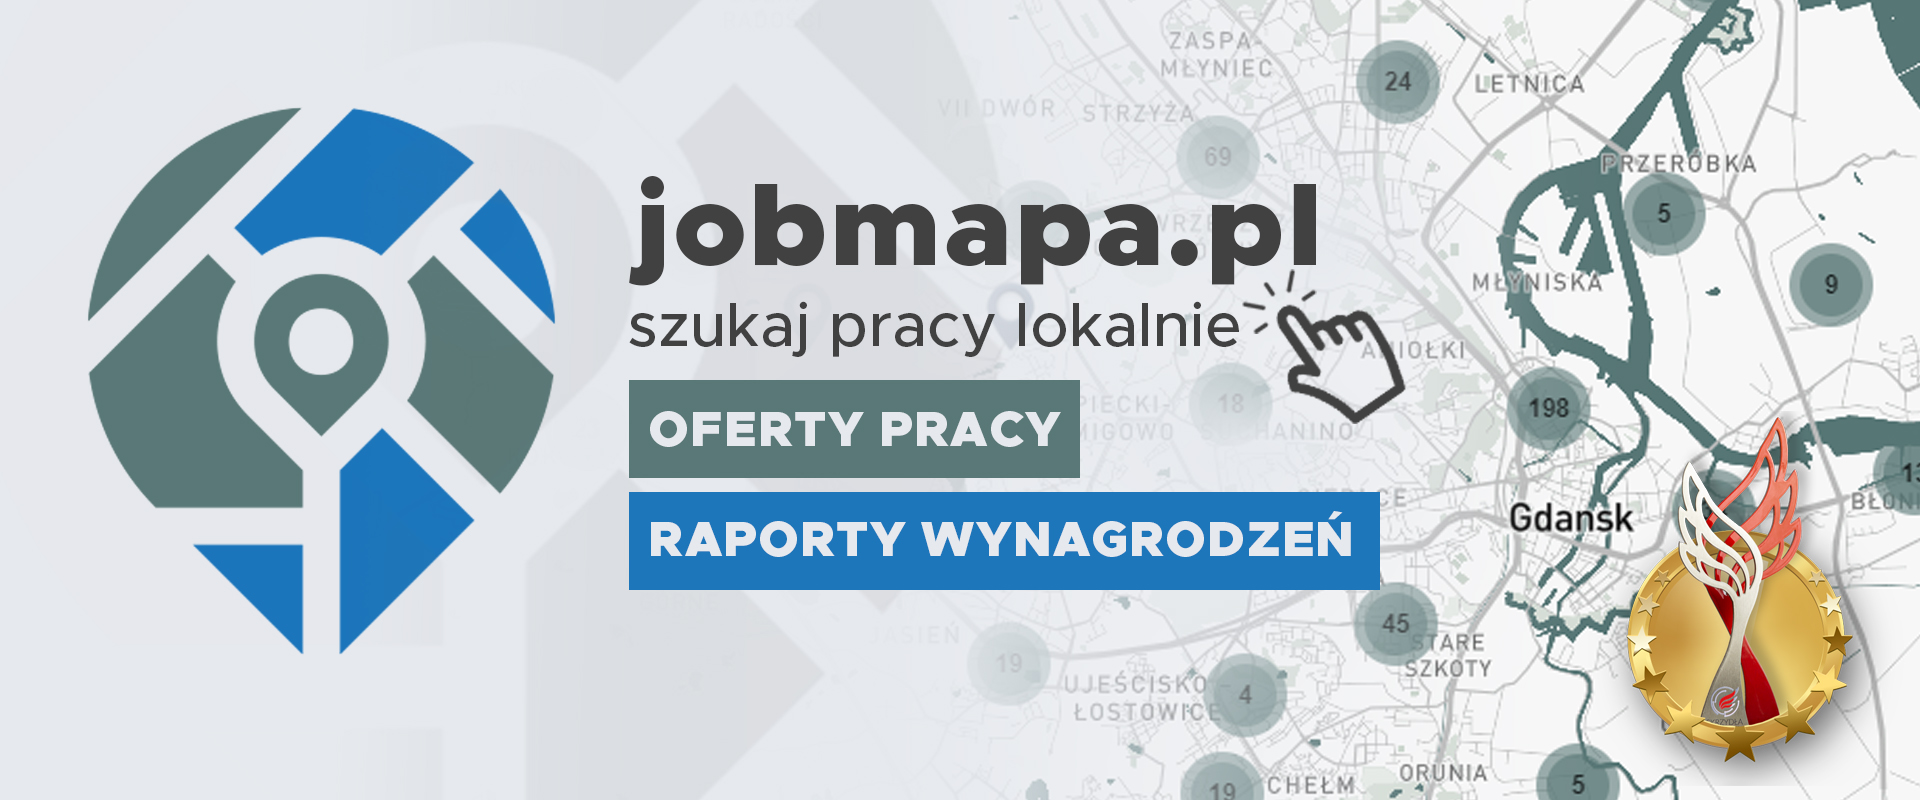 baner promujący stronę internetową jobmapa.pl